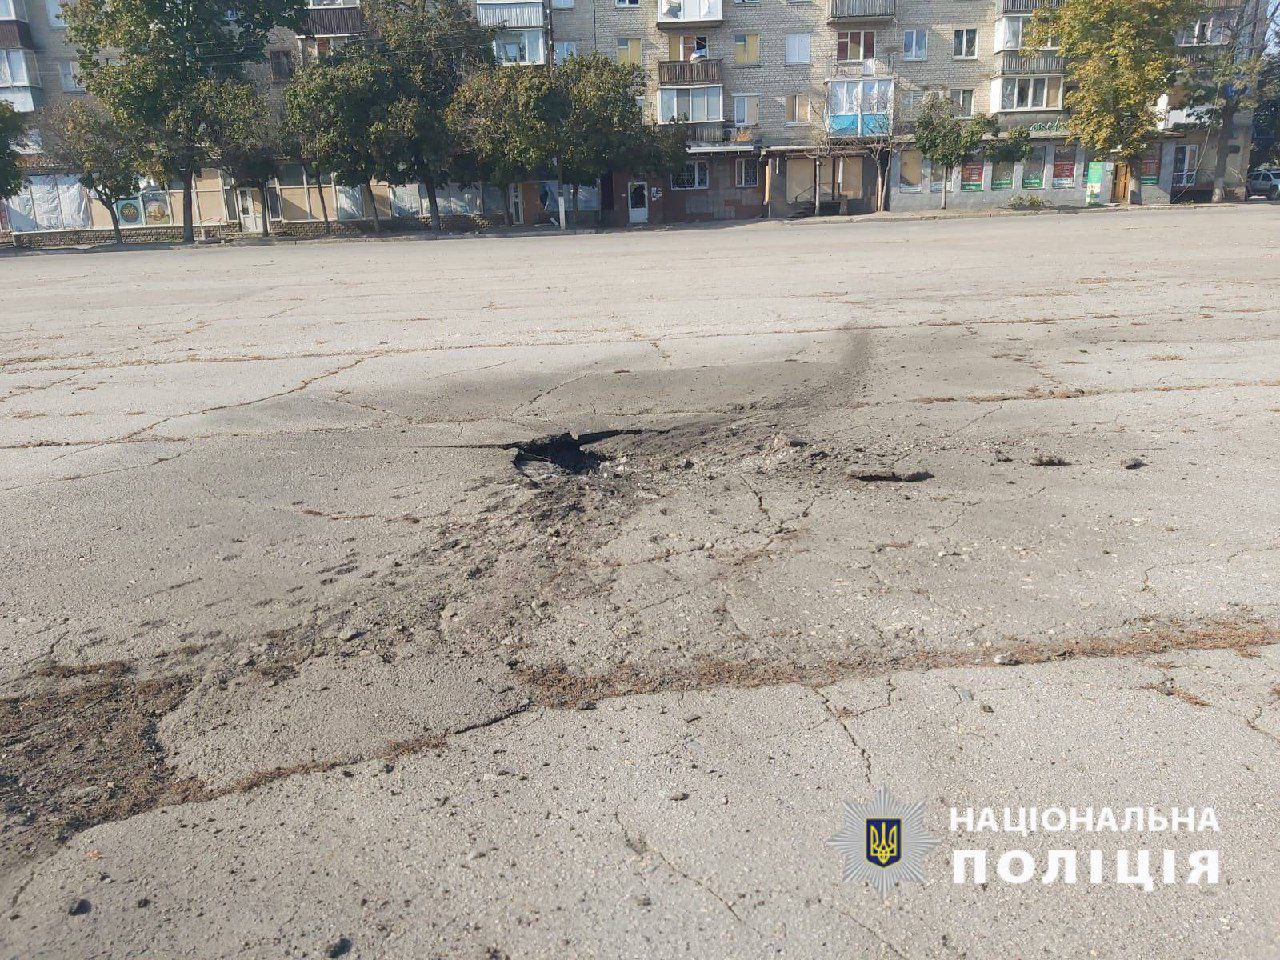 ❗️63-летний житель Волчанска Харьковской области погиб в результате обстрела центральной площади города из артиллерии, - областная прокуратура